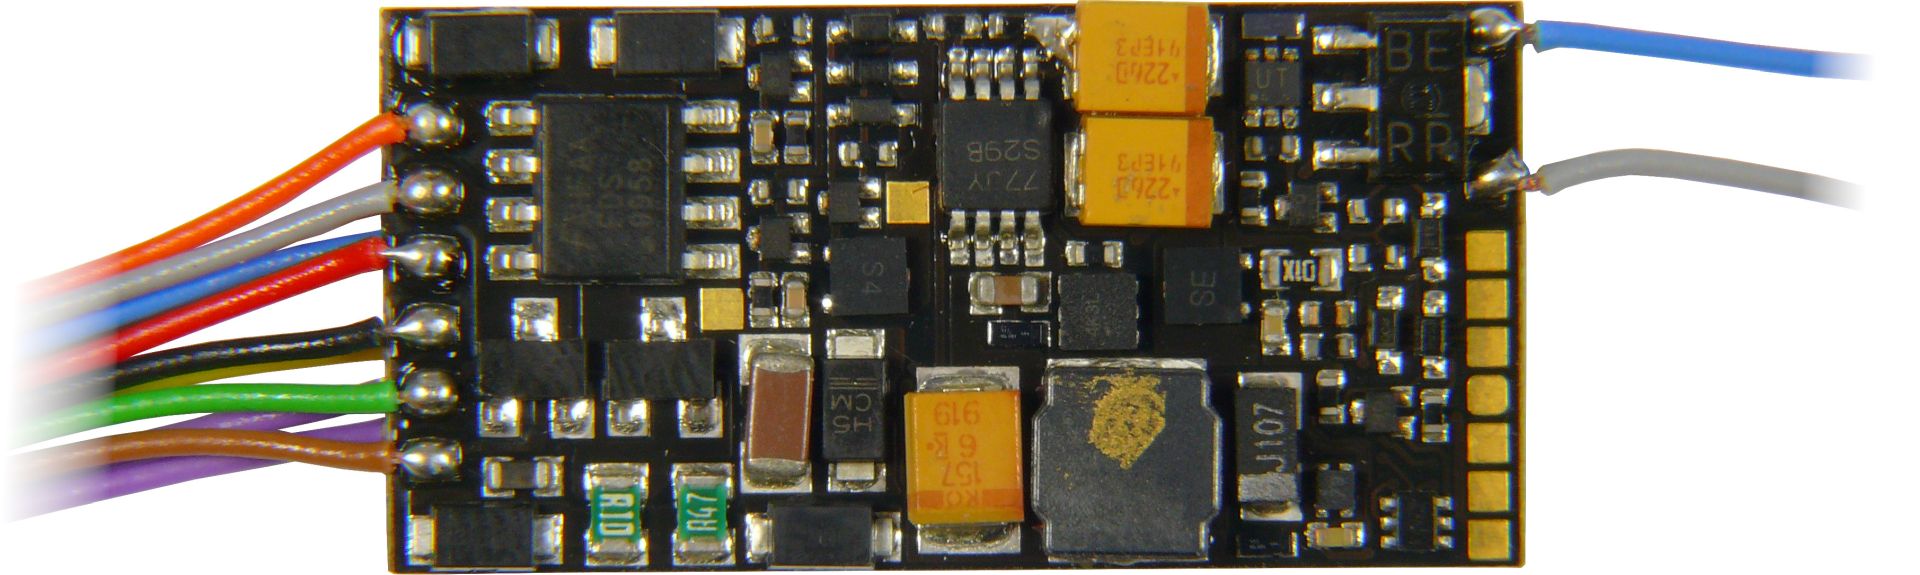 Zimo MS450 - Sounddecoder, 30x15x4, an 13 Litzen